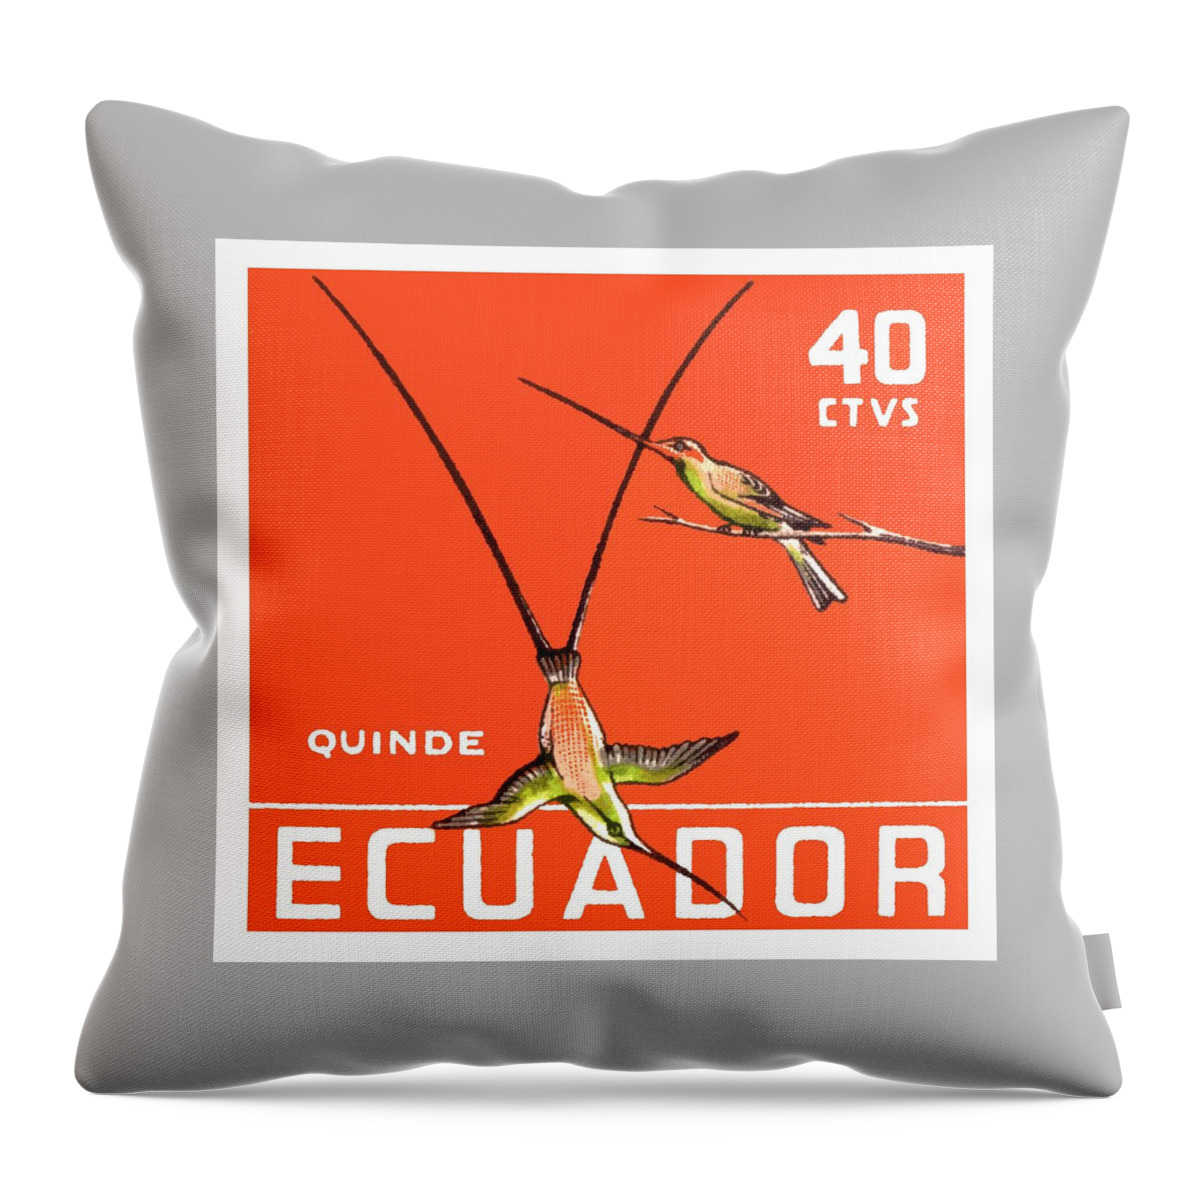 Ecuador Throw Pillow featuring the digital art 1958 Ecuador Hummingbirds Postage Stamp by Retro Graphics